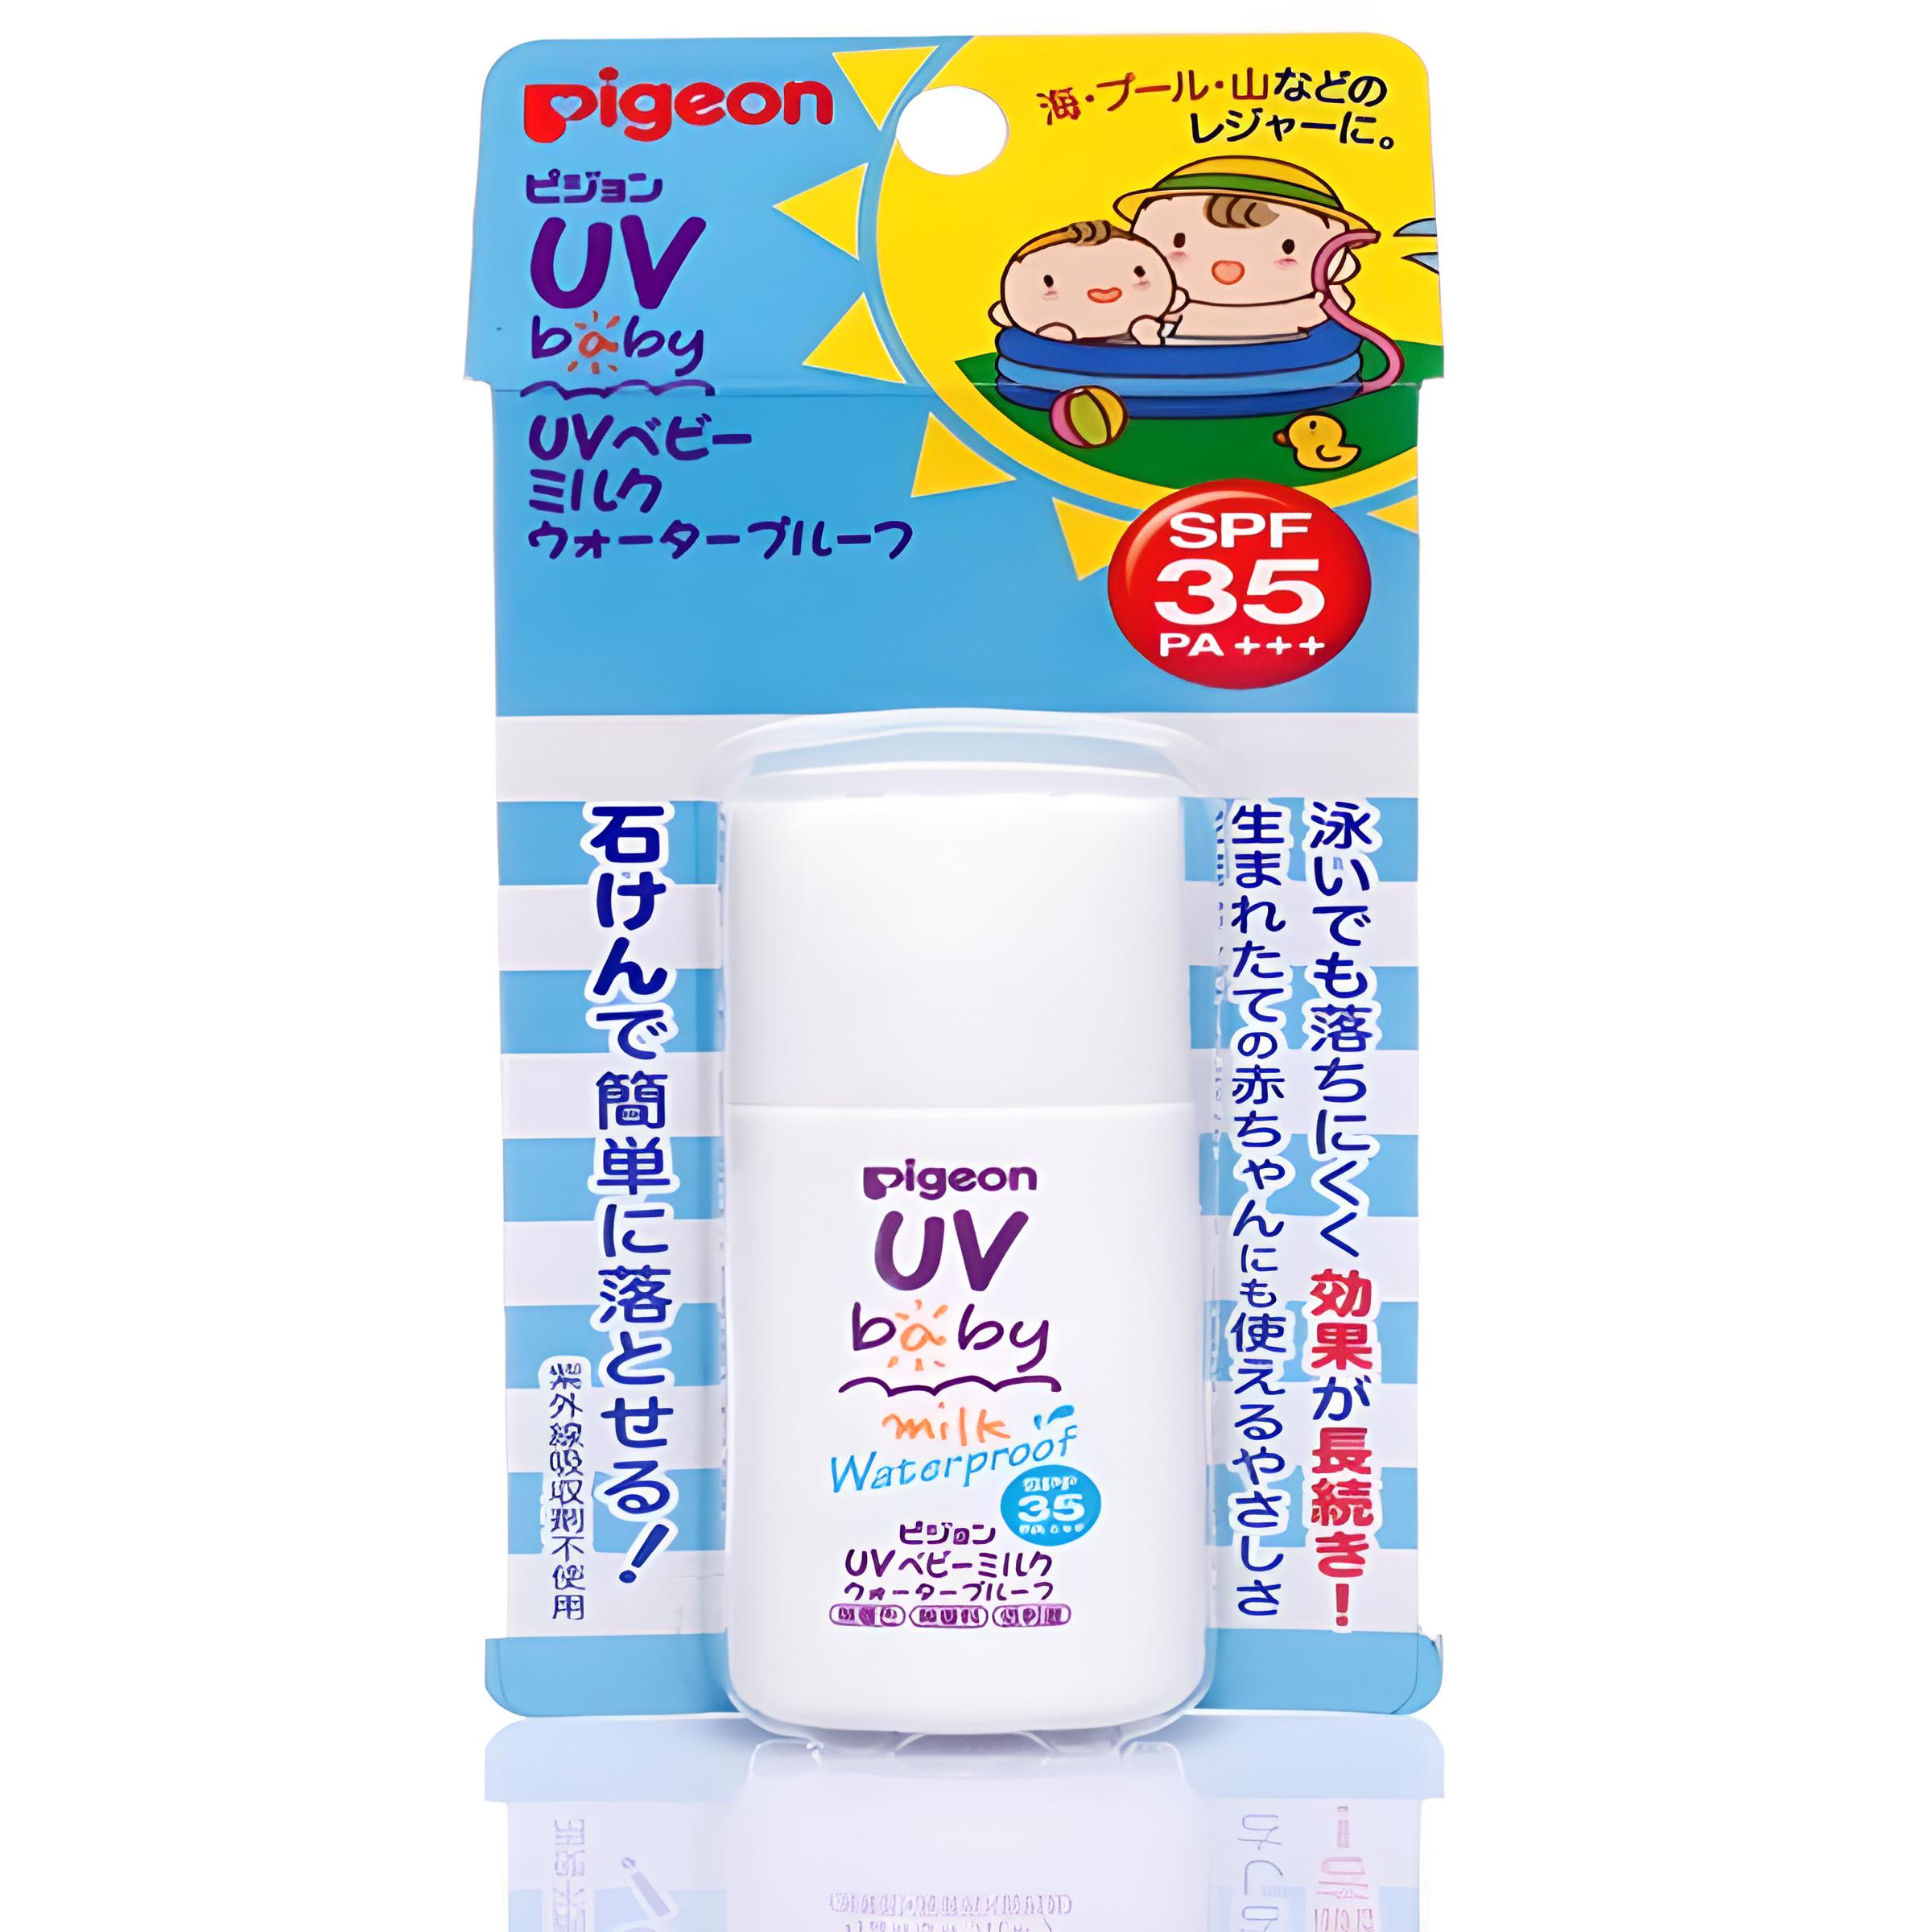 Sữa chống nắng Pigeon SPF 35PA +++ 30g - Hàng nội địa Nhật